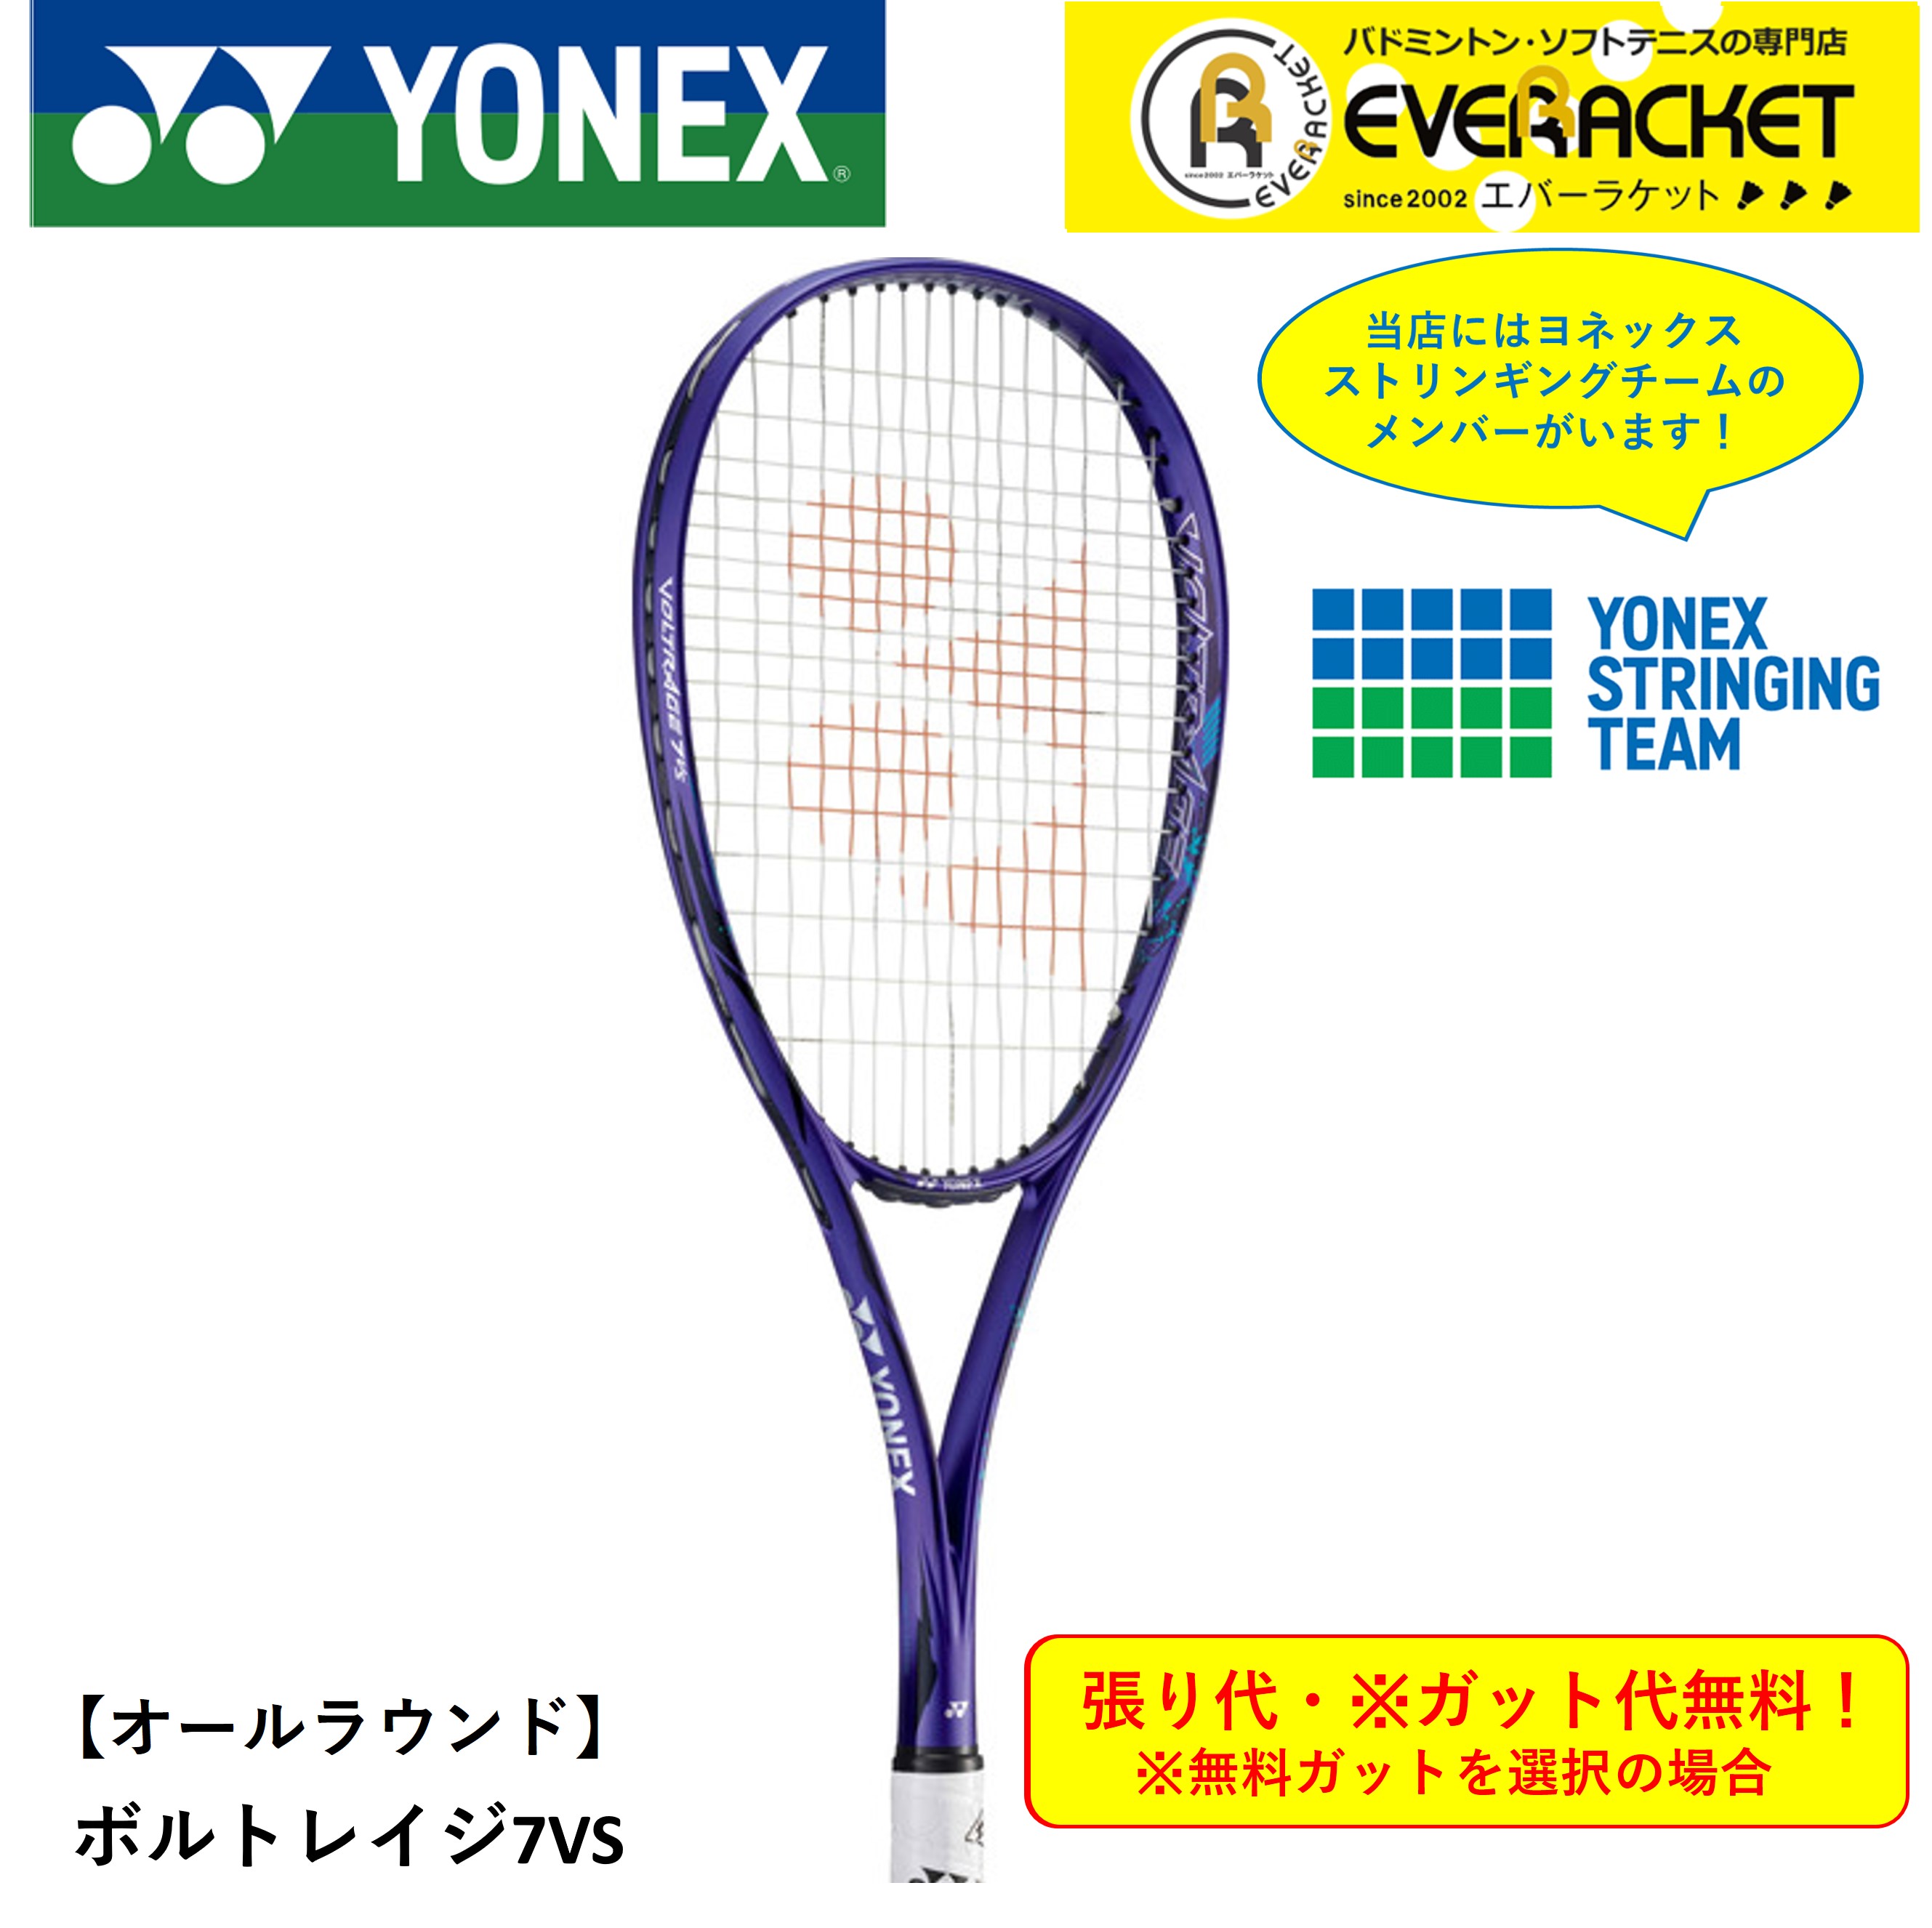 【最短出荷】【ガット代・張り代無料】【オールラウンド用】 YONEX ヨネックス ソフトテニスラケット <strong>ボルトレイジ7V</strong>S VR7VS